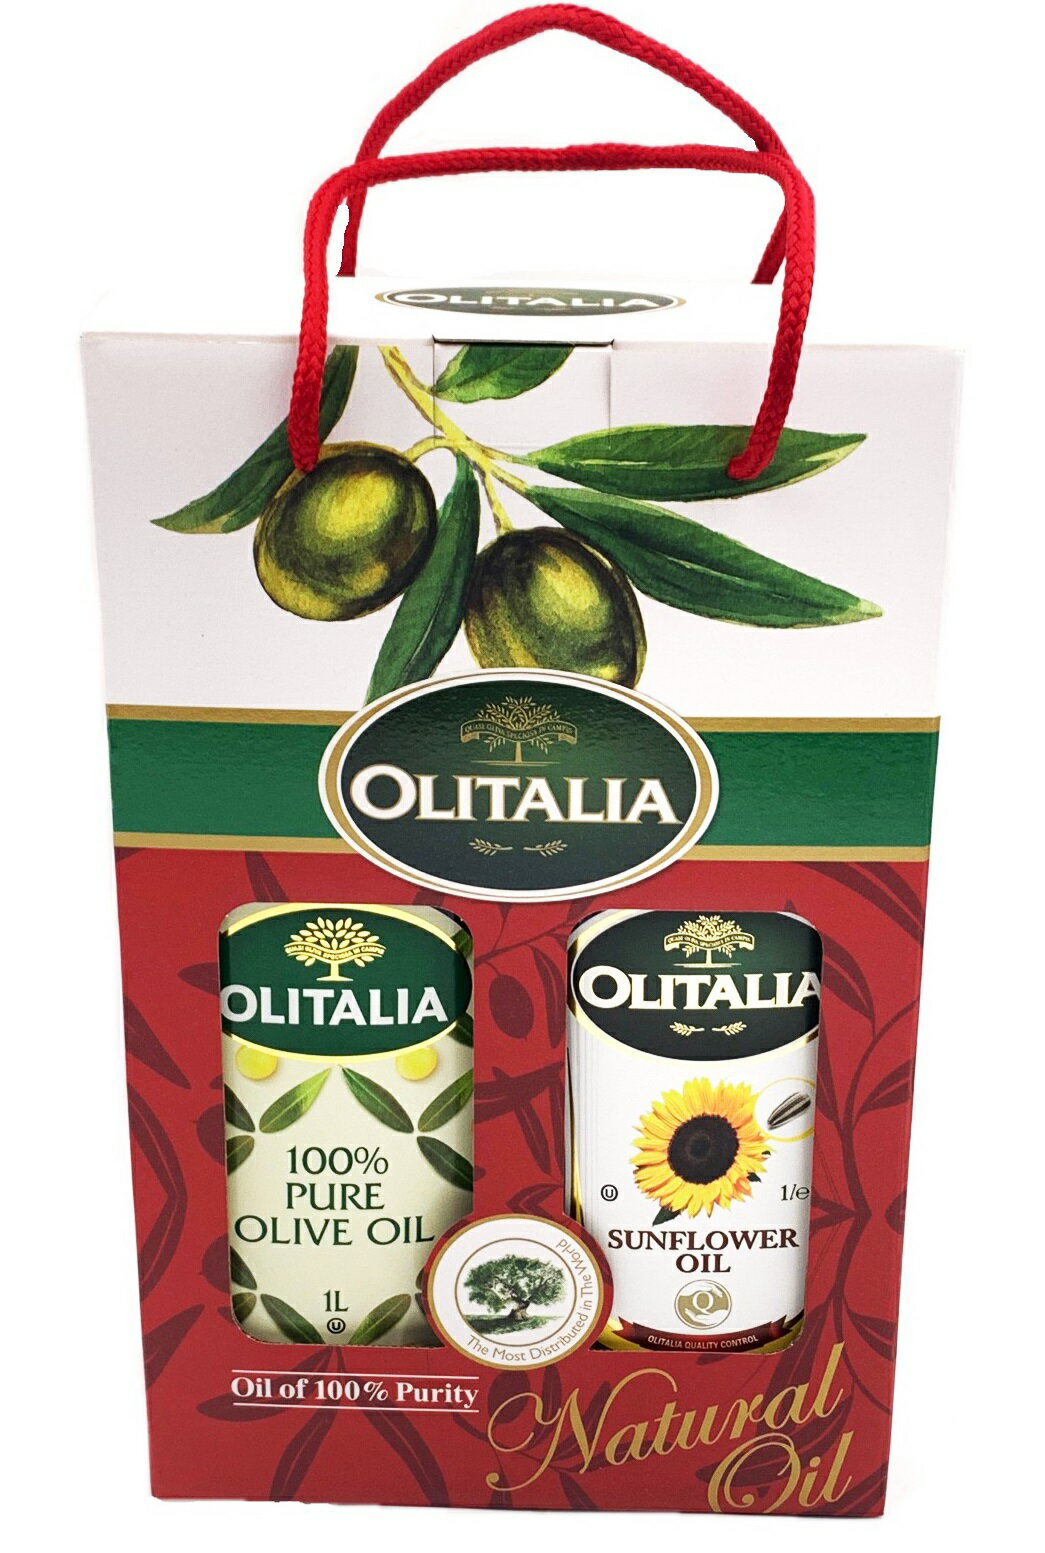 奧利塔-頂級橄欖油/頂級葵花油1公升雙入禮盒組